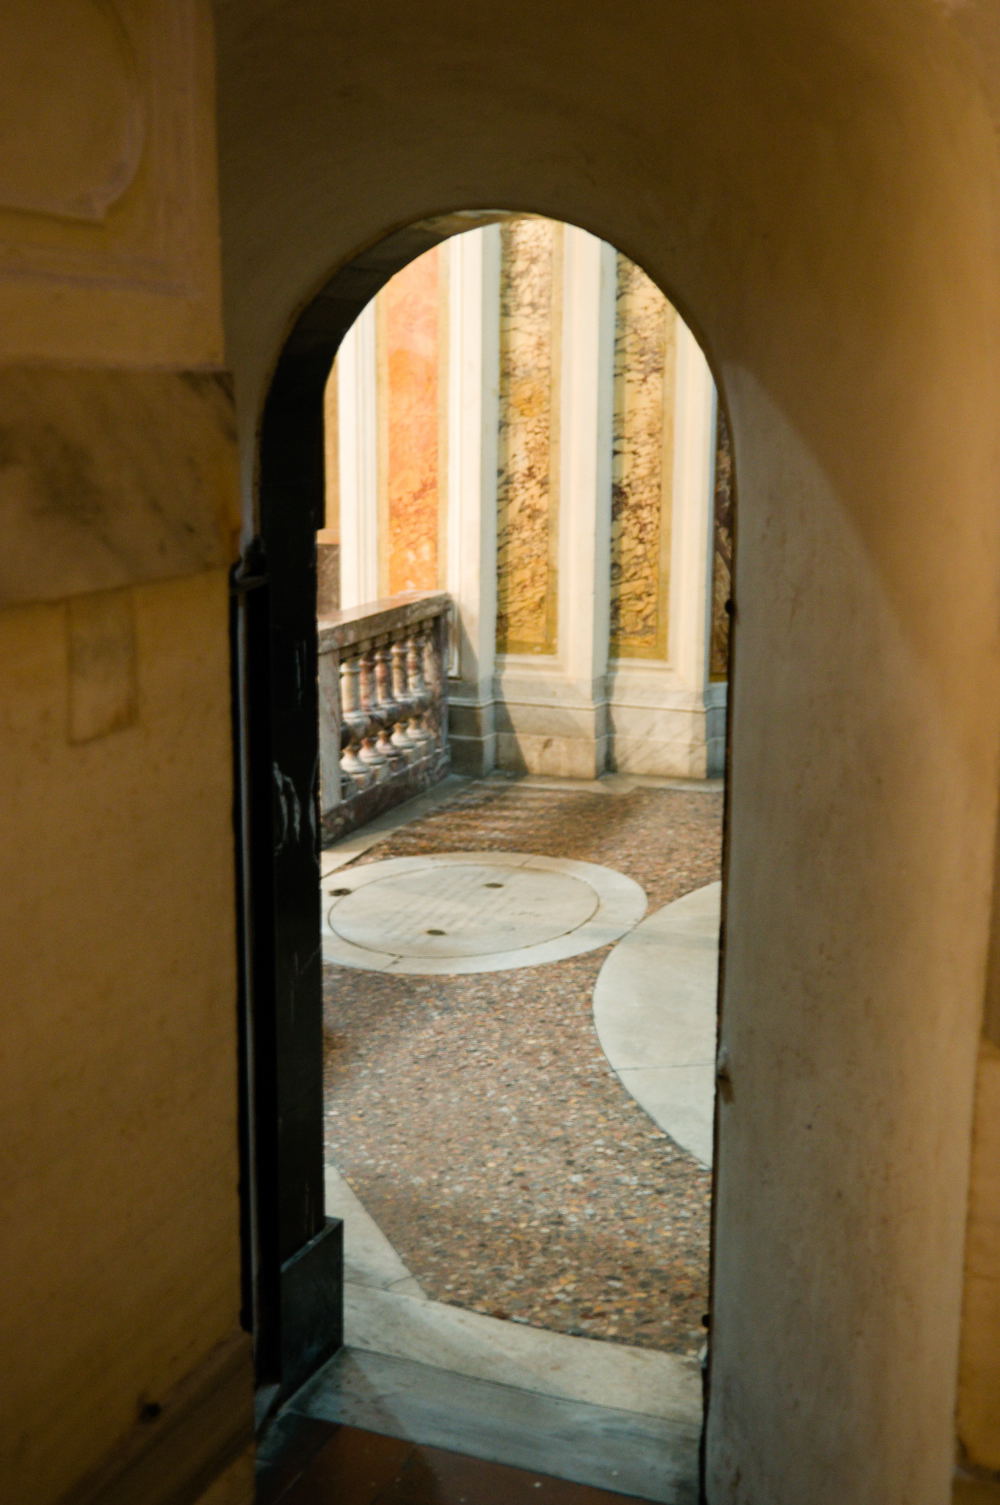 Through a narrow door